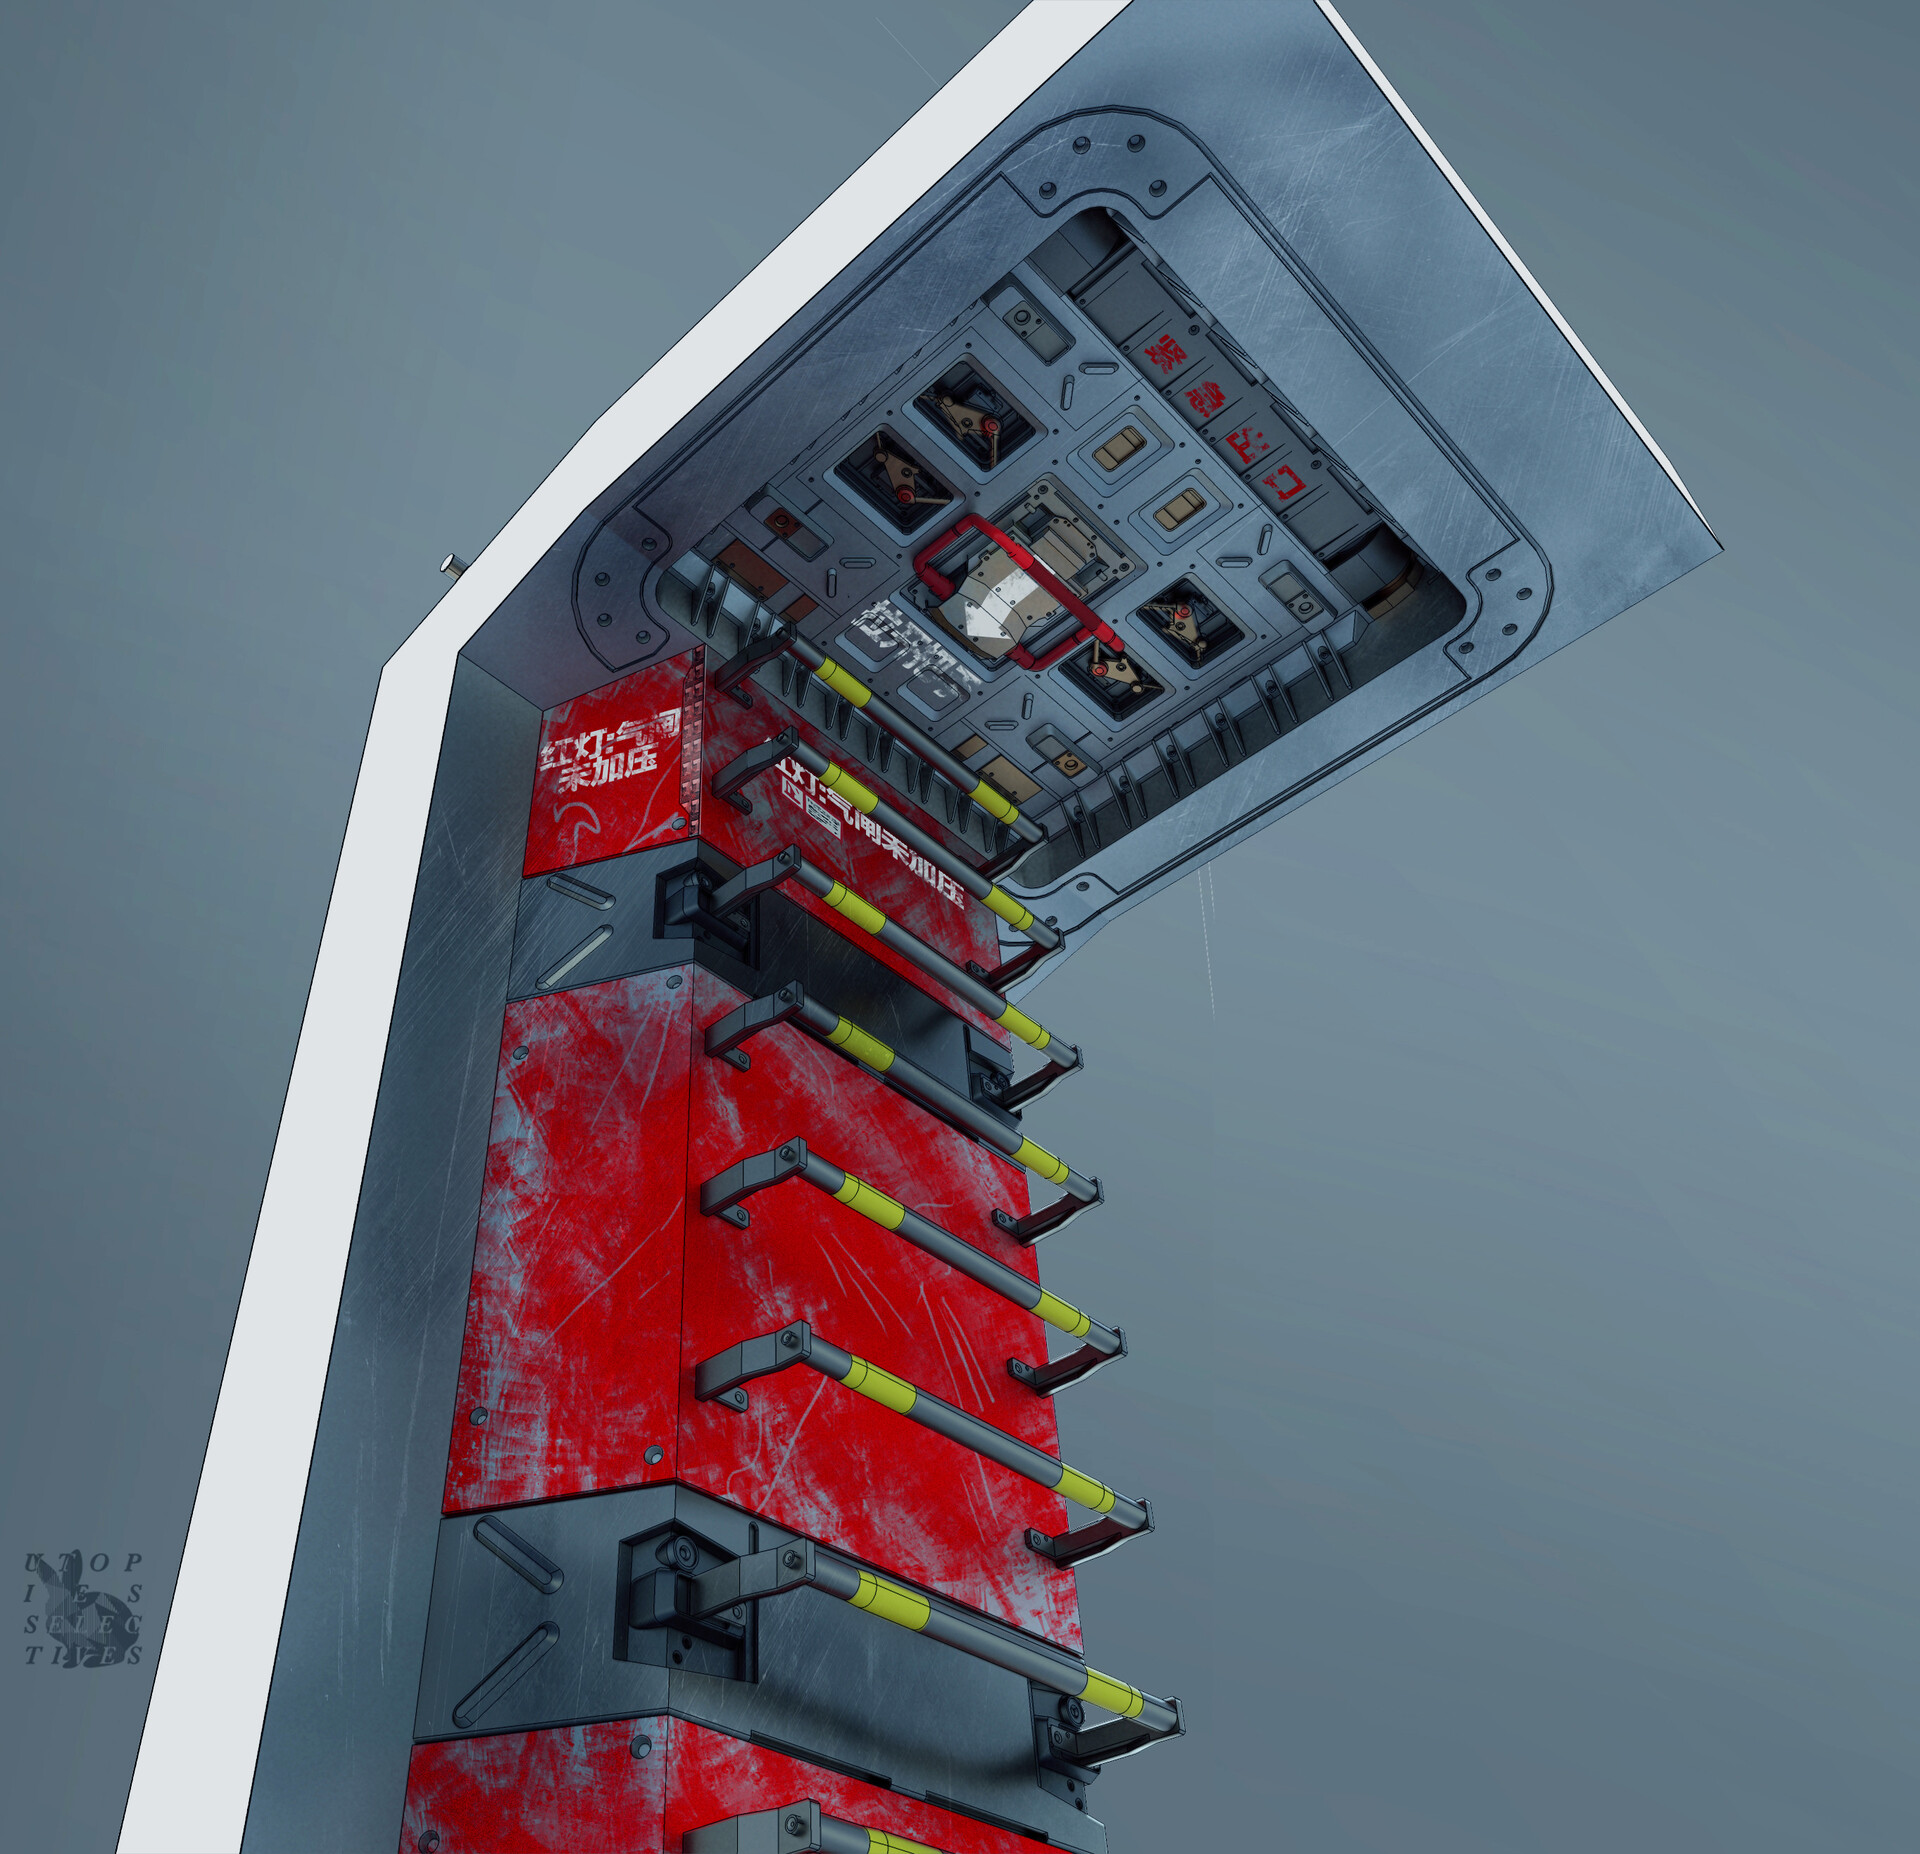 Emergency hatch - interior with ladder